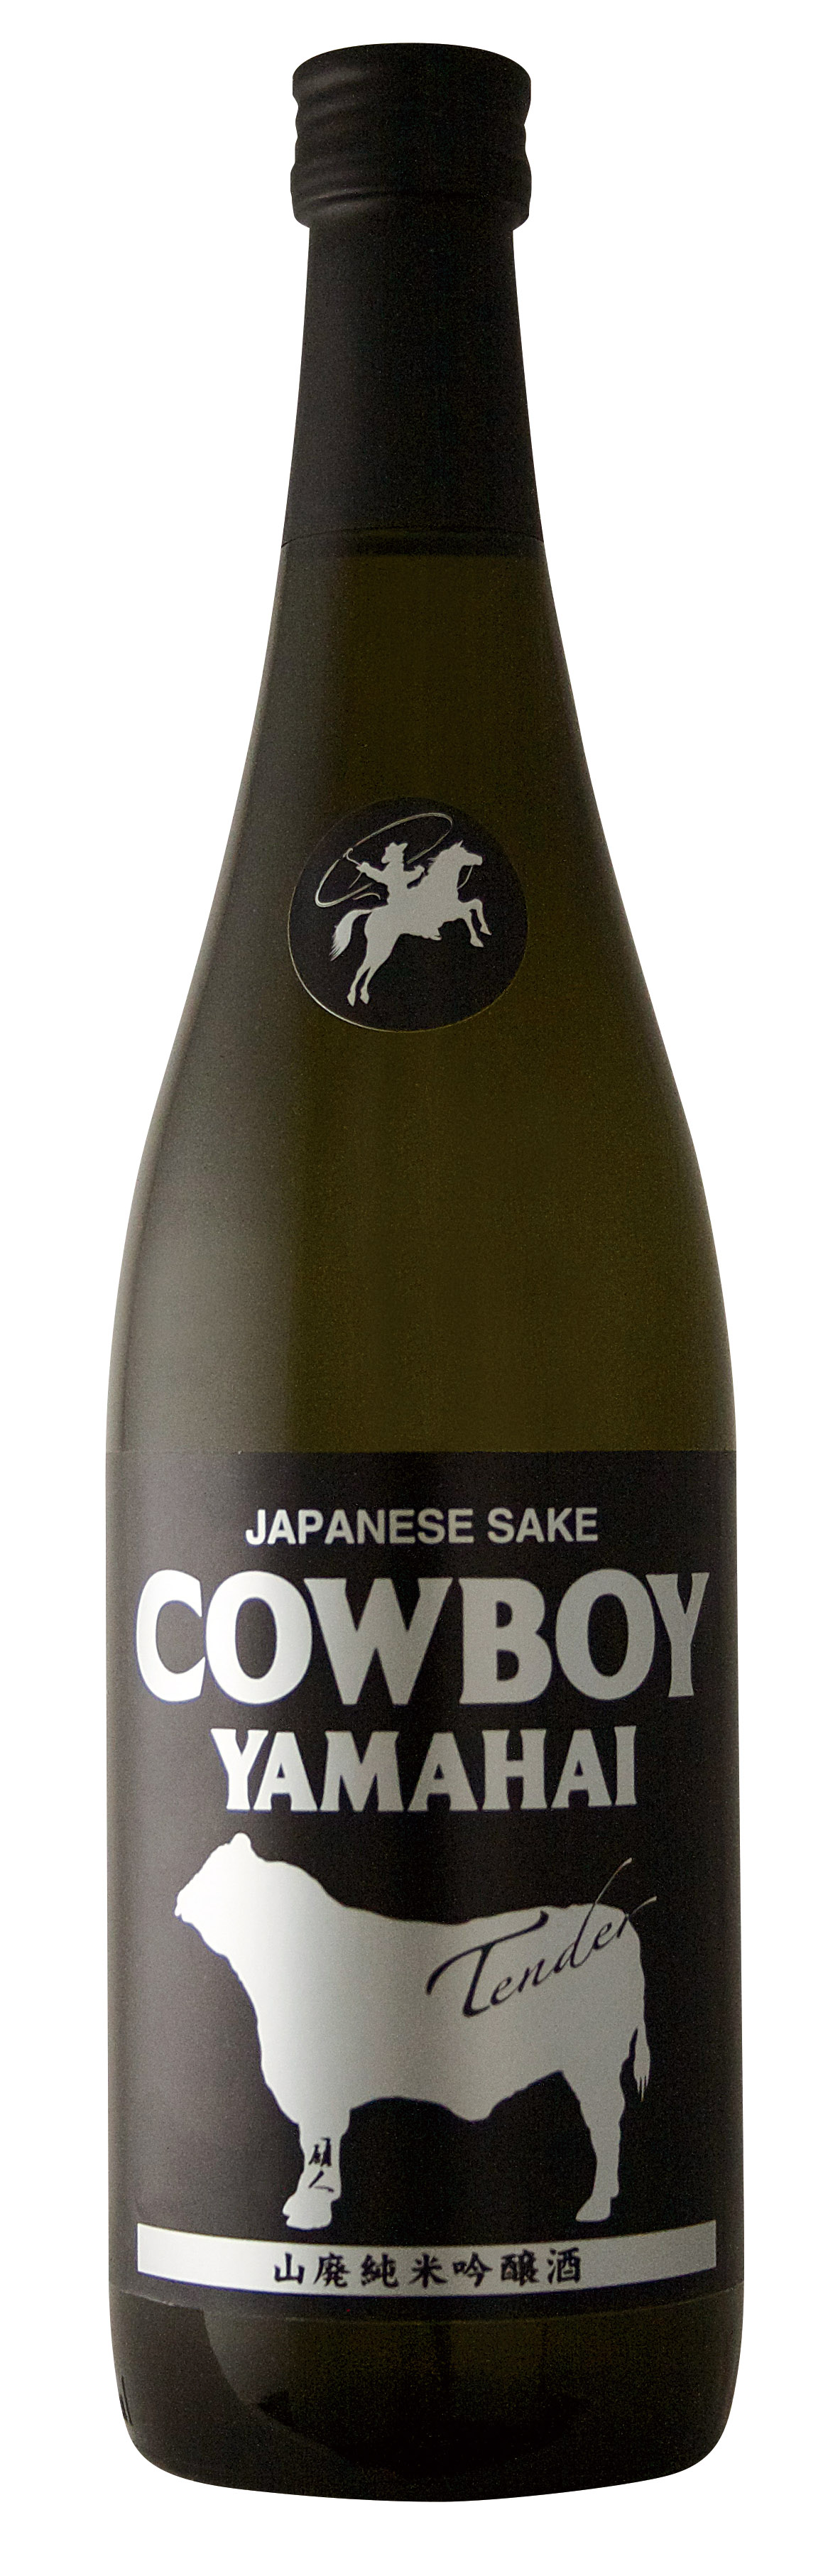 Cowboy Sake bottle